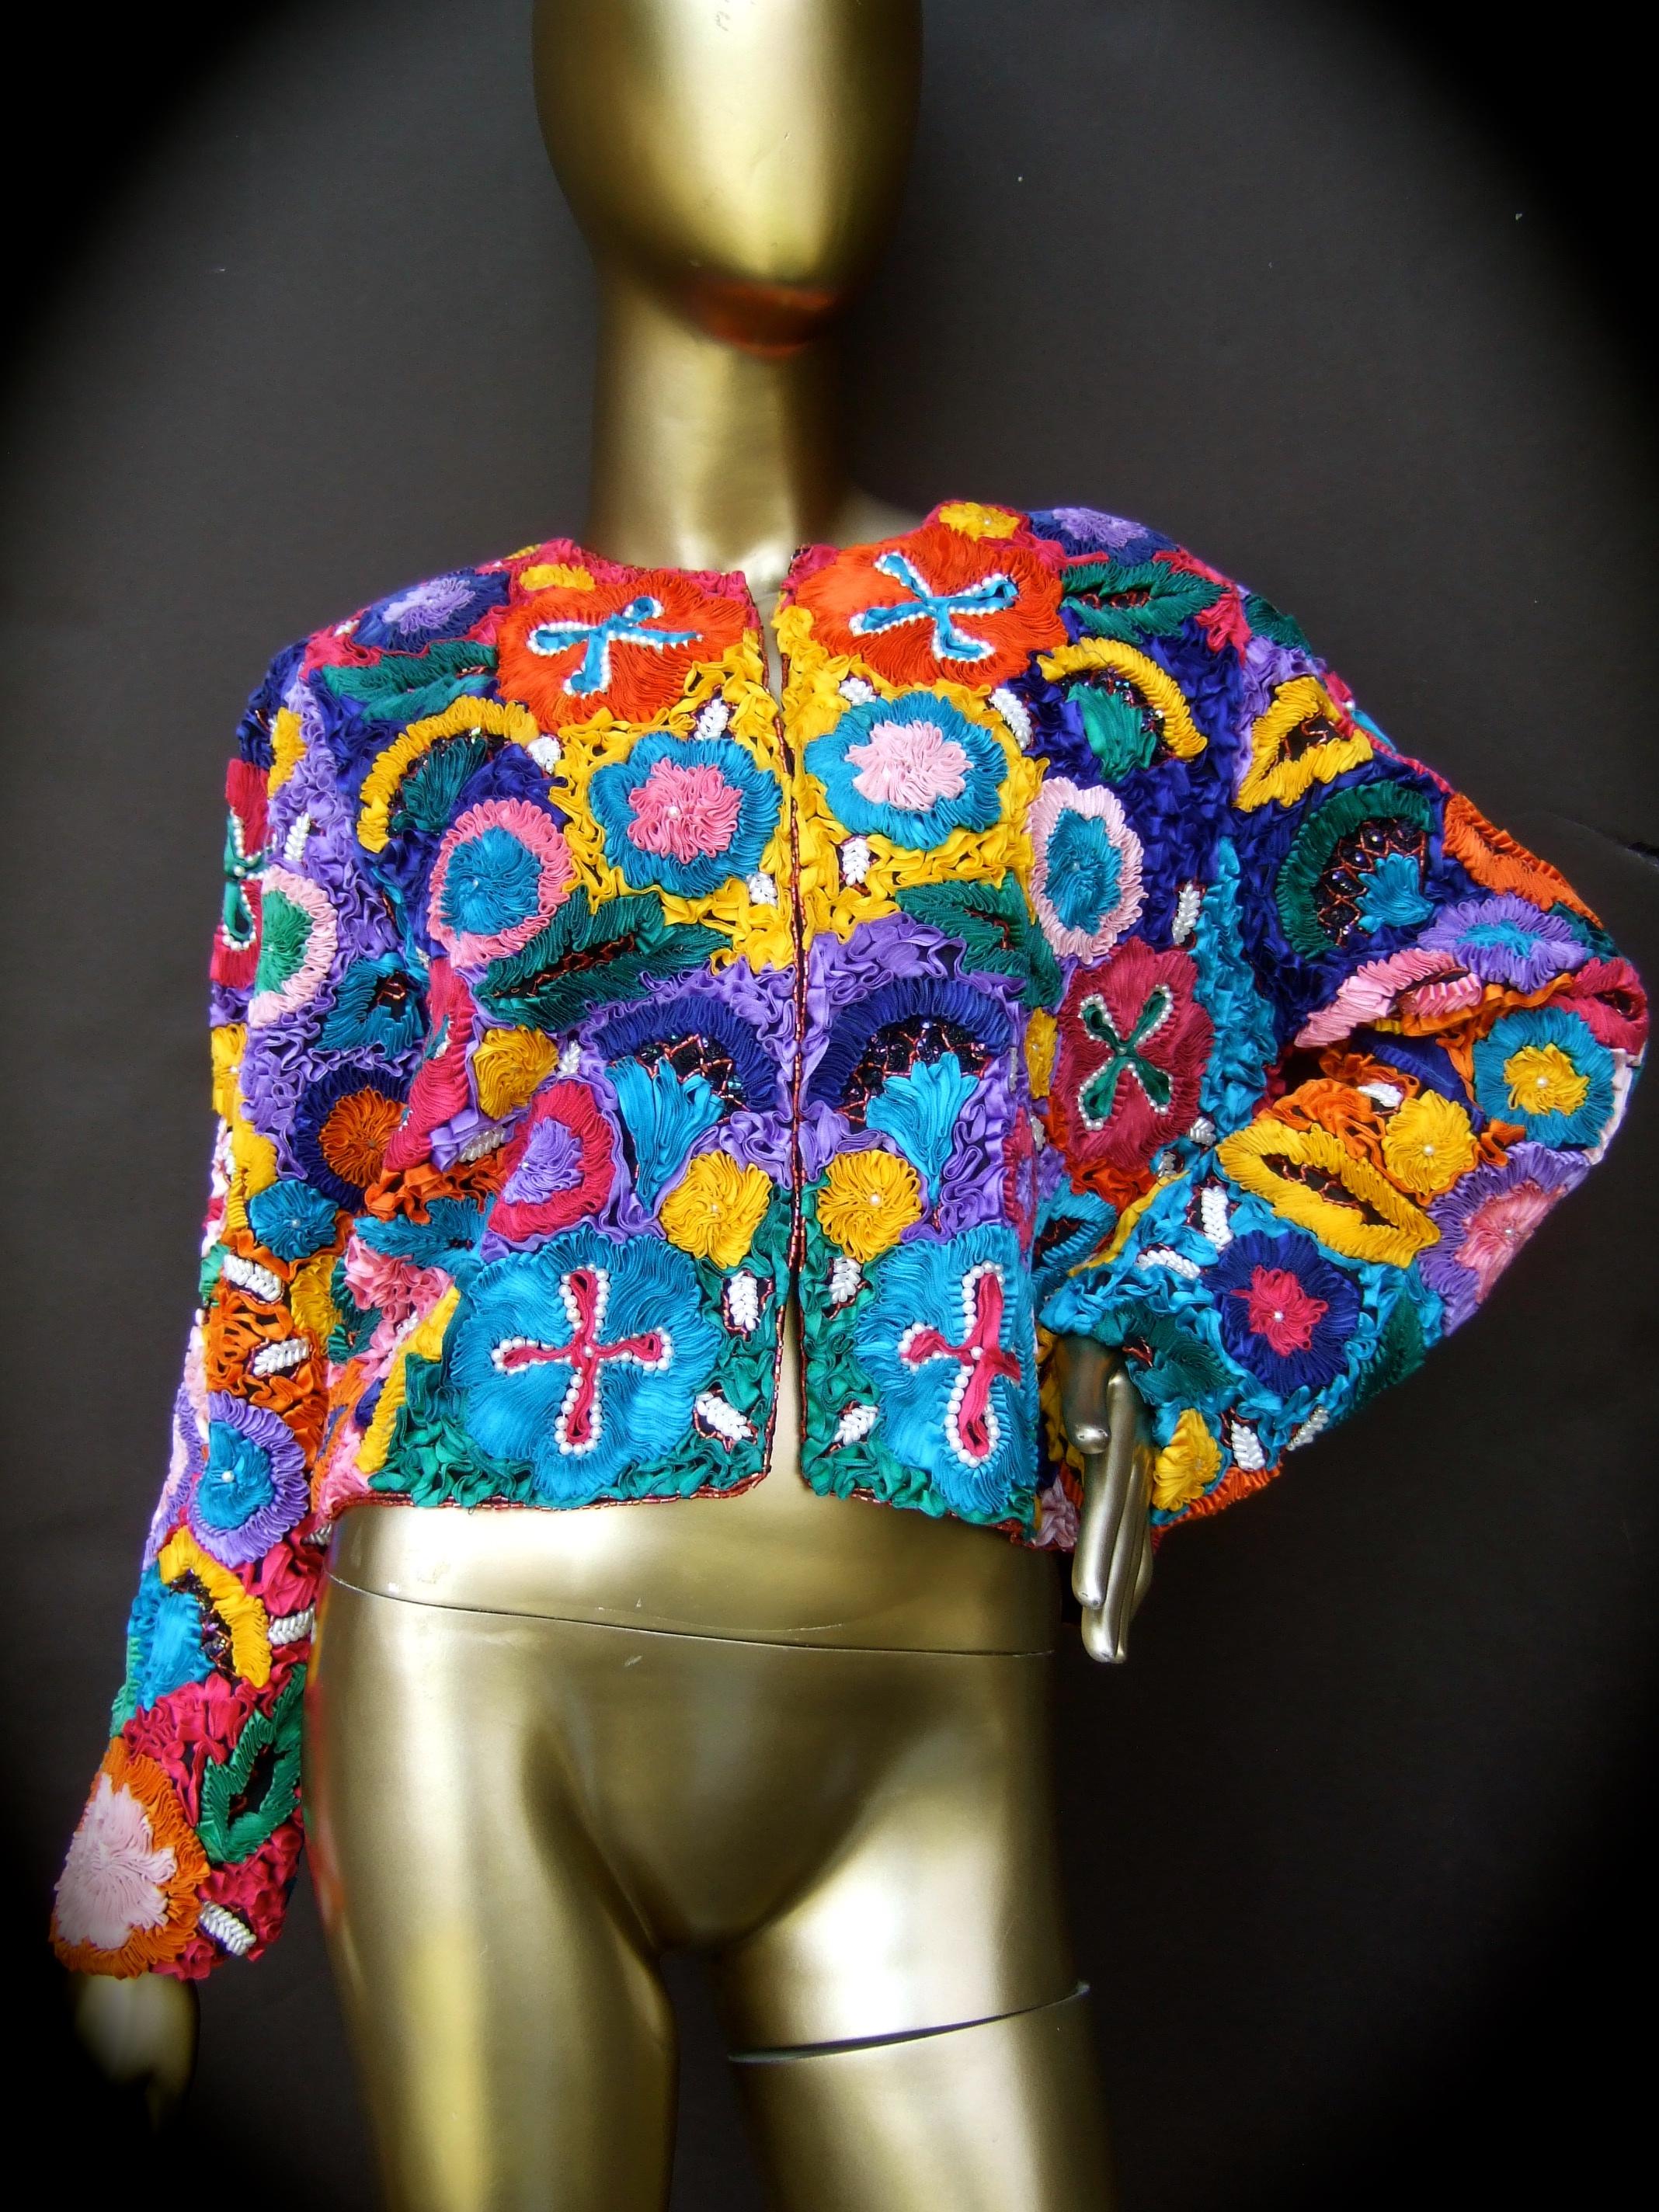 Neiman Marcus avant-garde, veste de style boléro en ruban de soie pastel, c. années 1990
Cette veste unique est ornée de rubans plissés en soie pastel.
dans une myriade de couleurs vives  des couleurs qui attirent l'attention 

Les rubans complexes